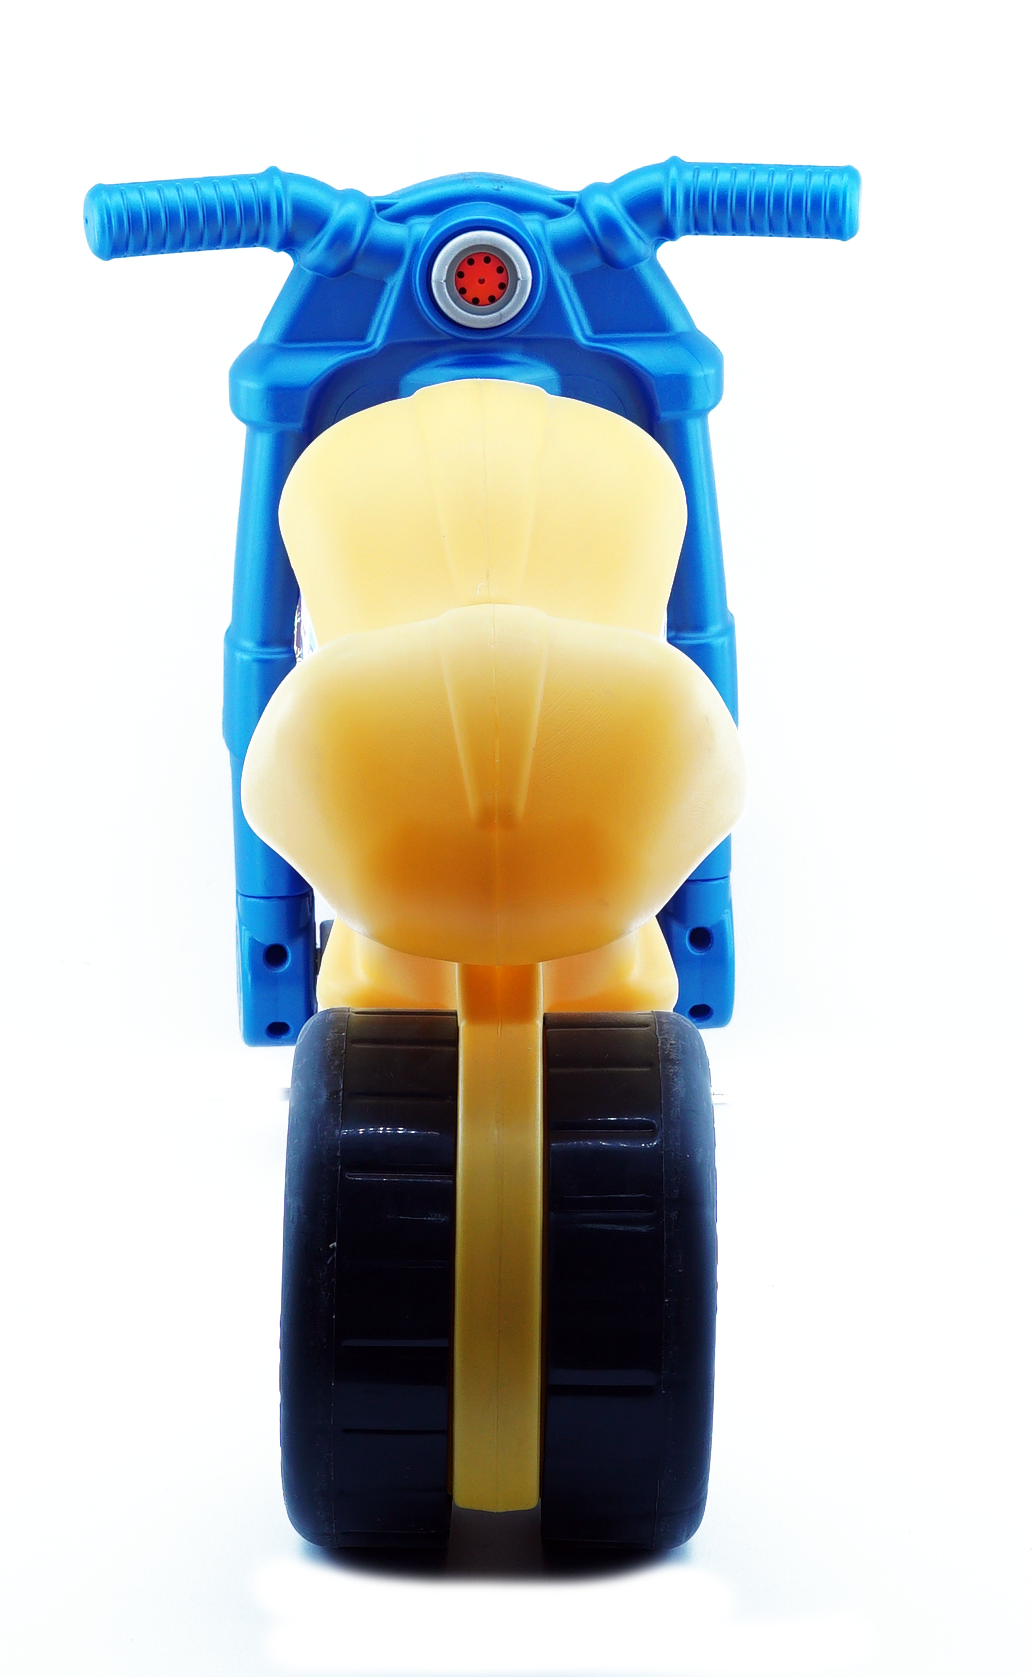 Montable Moto Correpasillos para niños 4 colores (Color Azul) Baby Baby  CENMOTOTIC-Azul